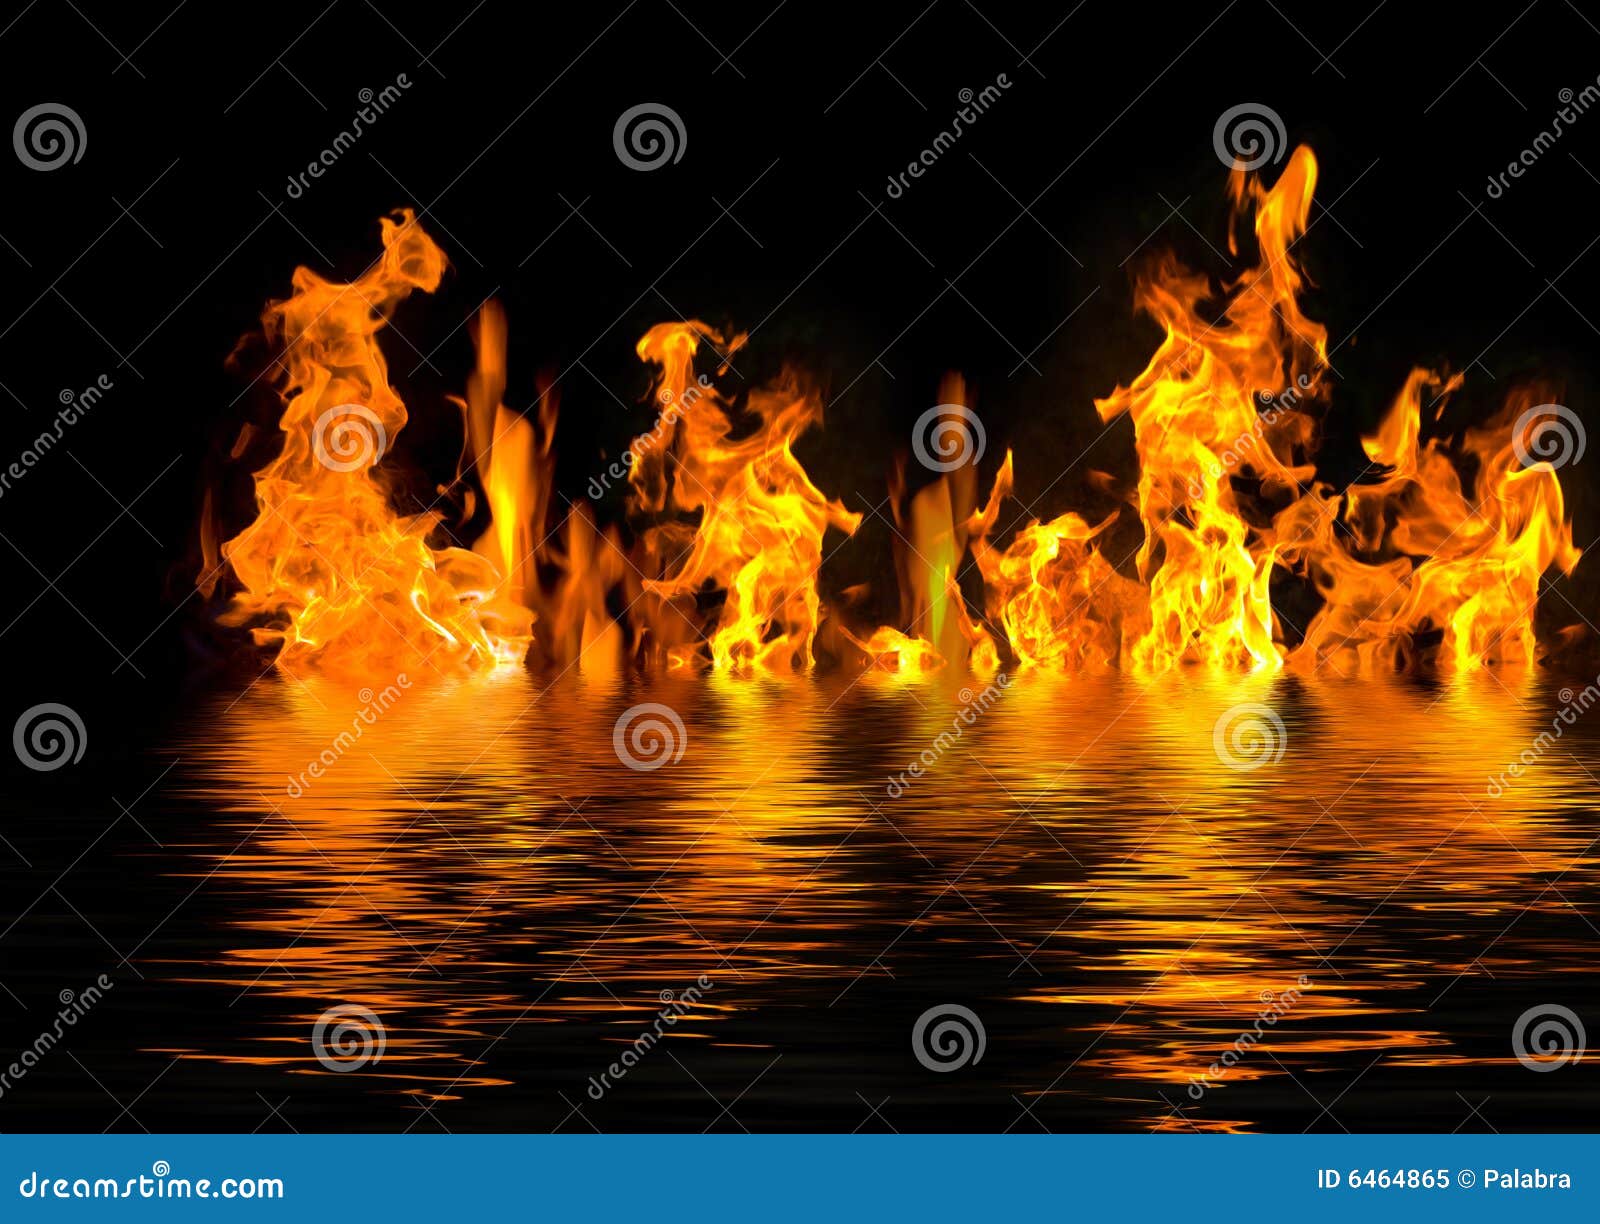 Топливо вода горит. Вода горит. Озеро в огне. Огонь горящий в воде. Огонь в воде горит.